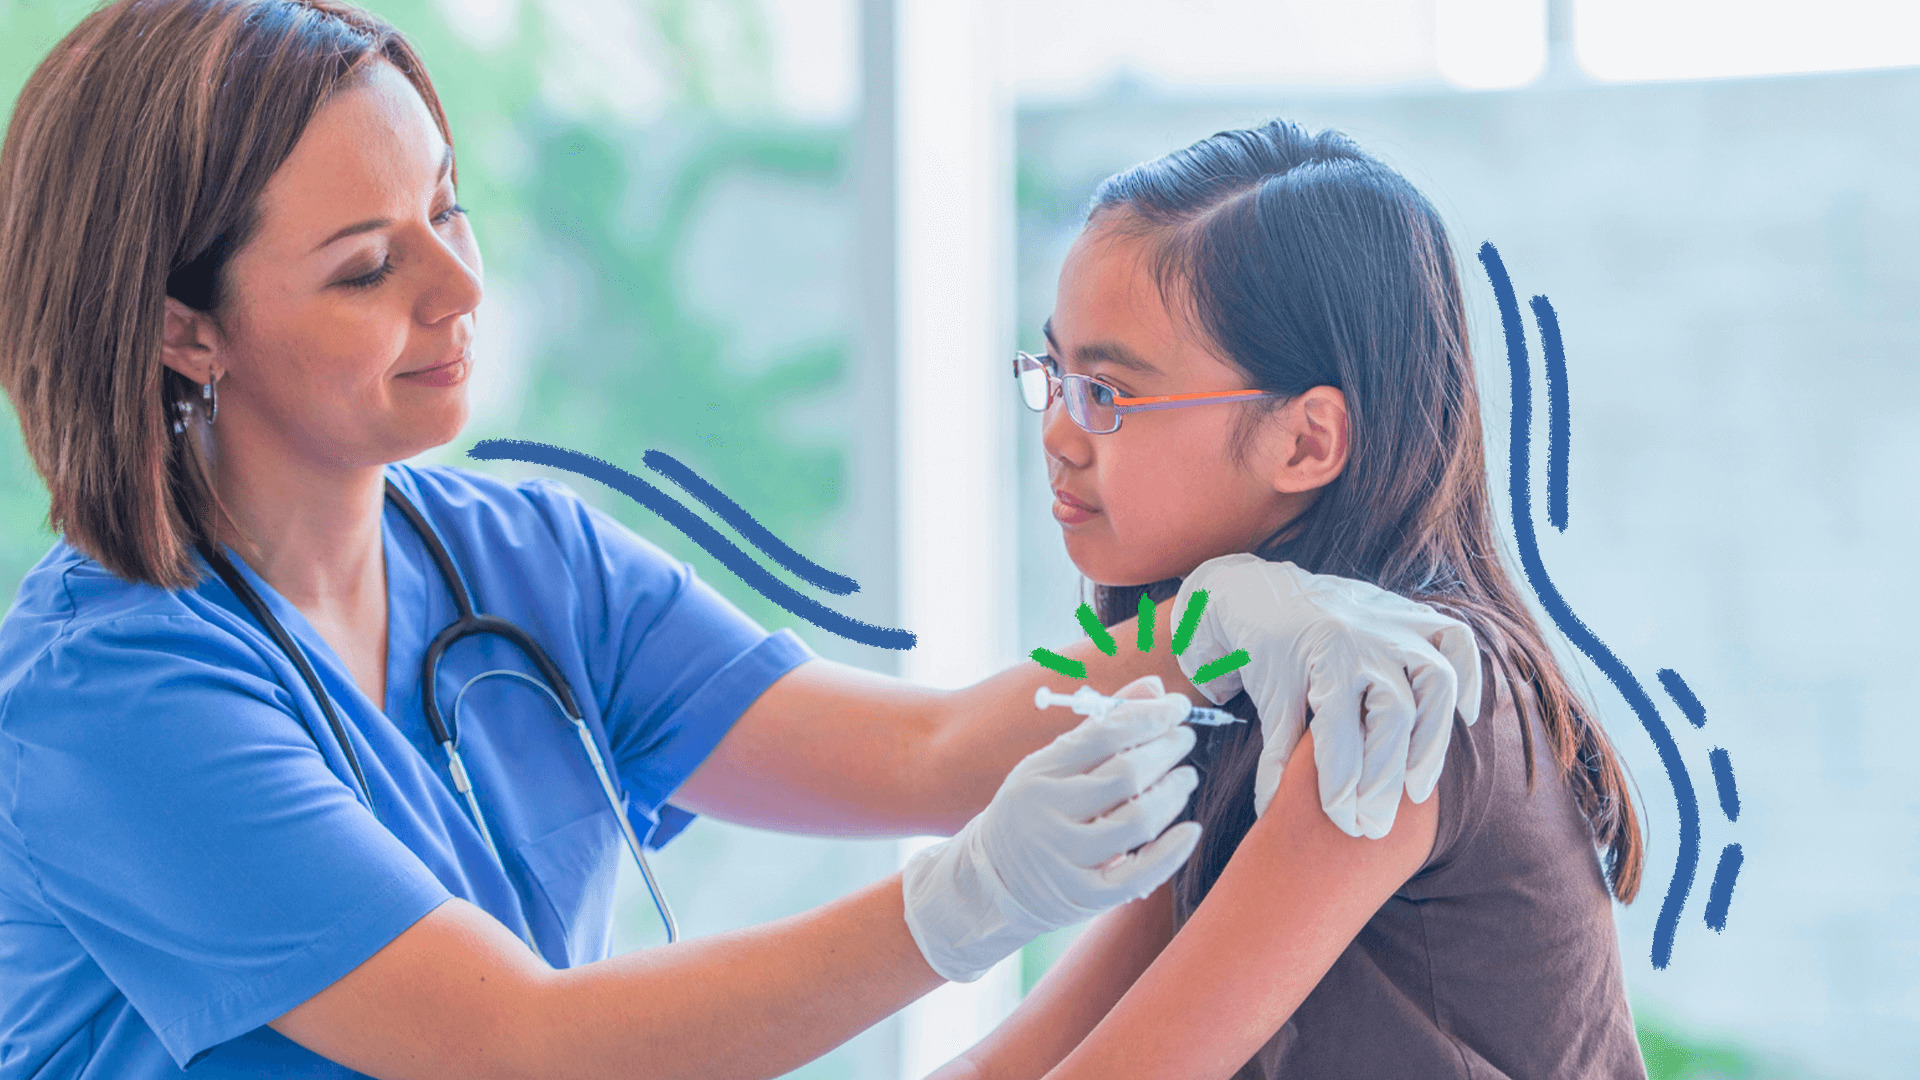 Imagem ilustra a matéria sobre vacinas e volta às aulas e mostra uma enfermeira vestida de azul e luvas aplicando vacina em uma menina parda de cabelos lisos castanhos.